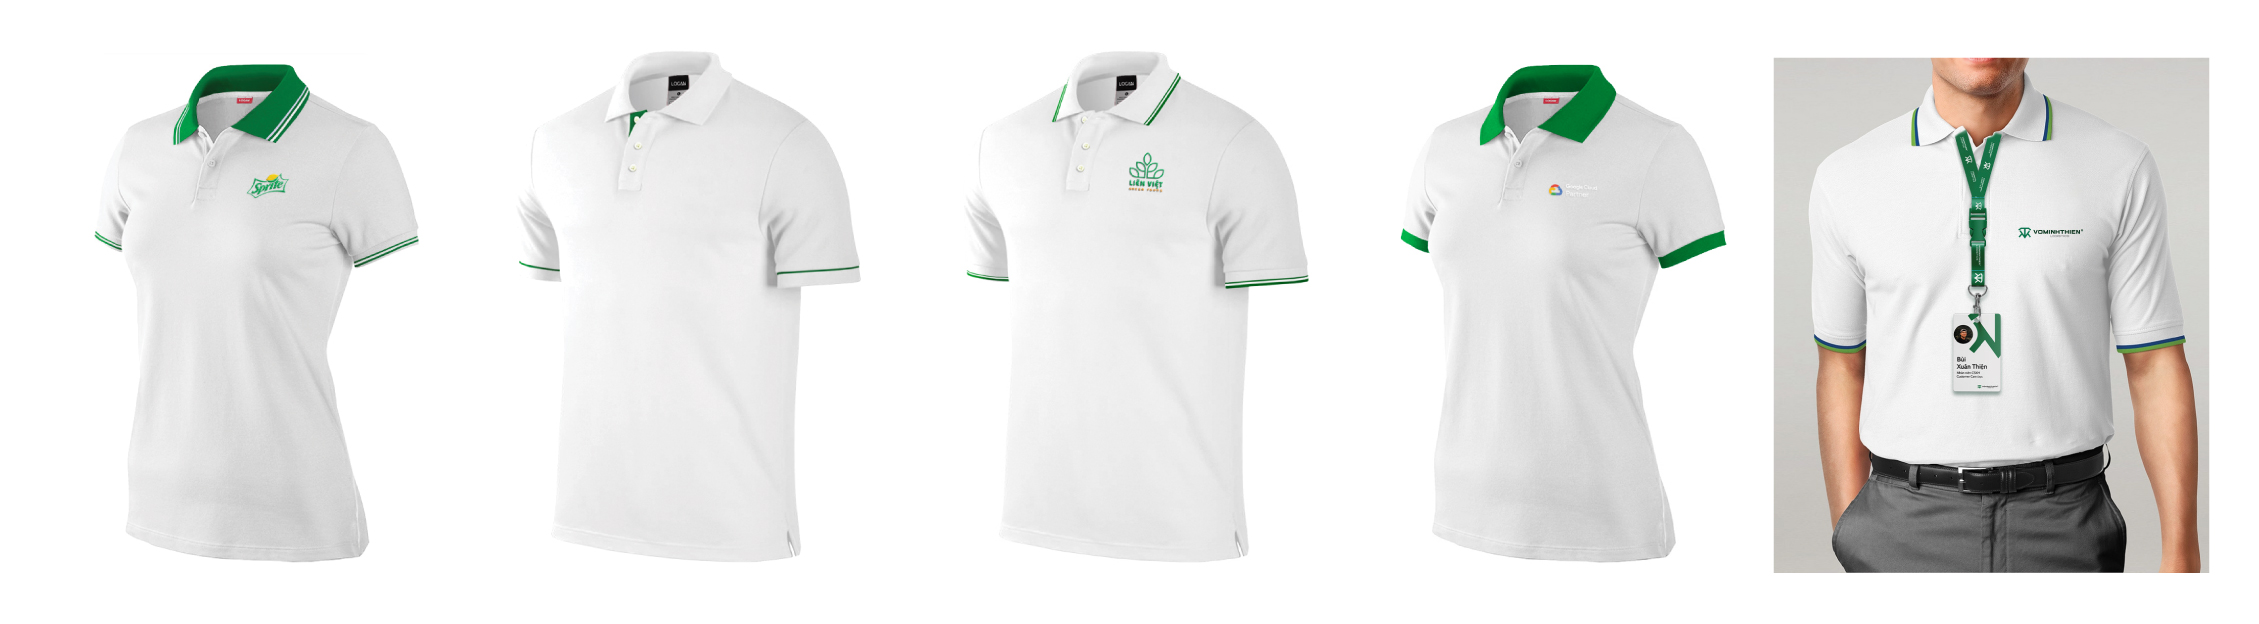 mẫu áo thun đồng phục trắng xanh green